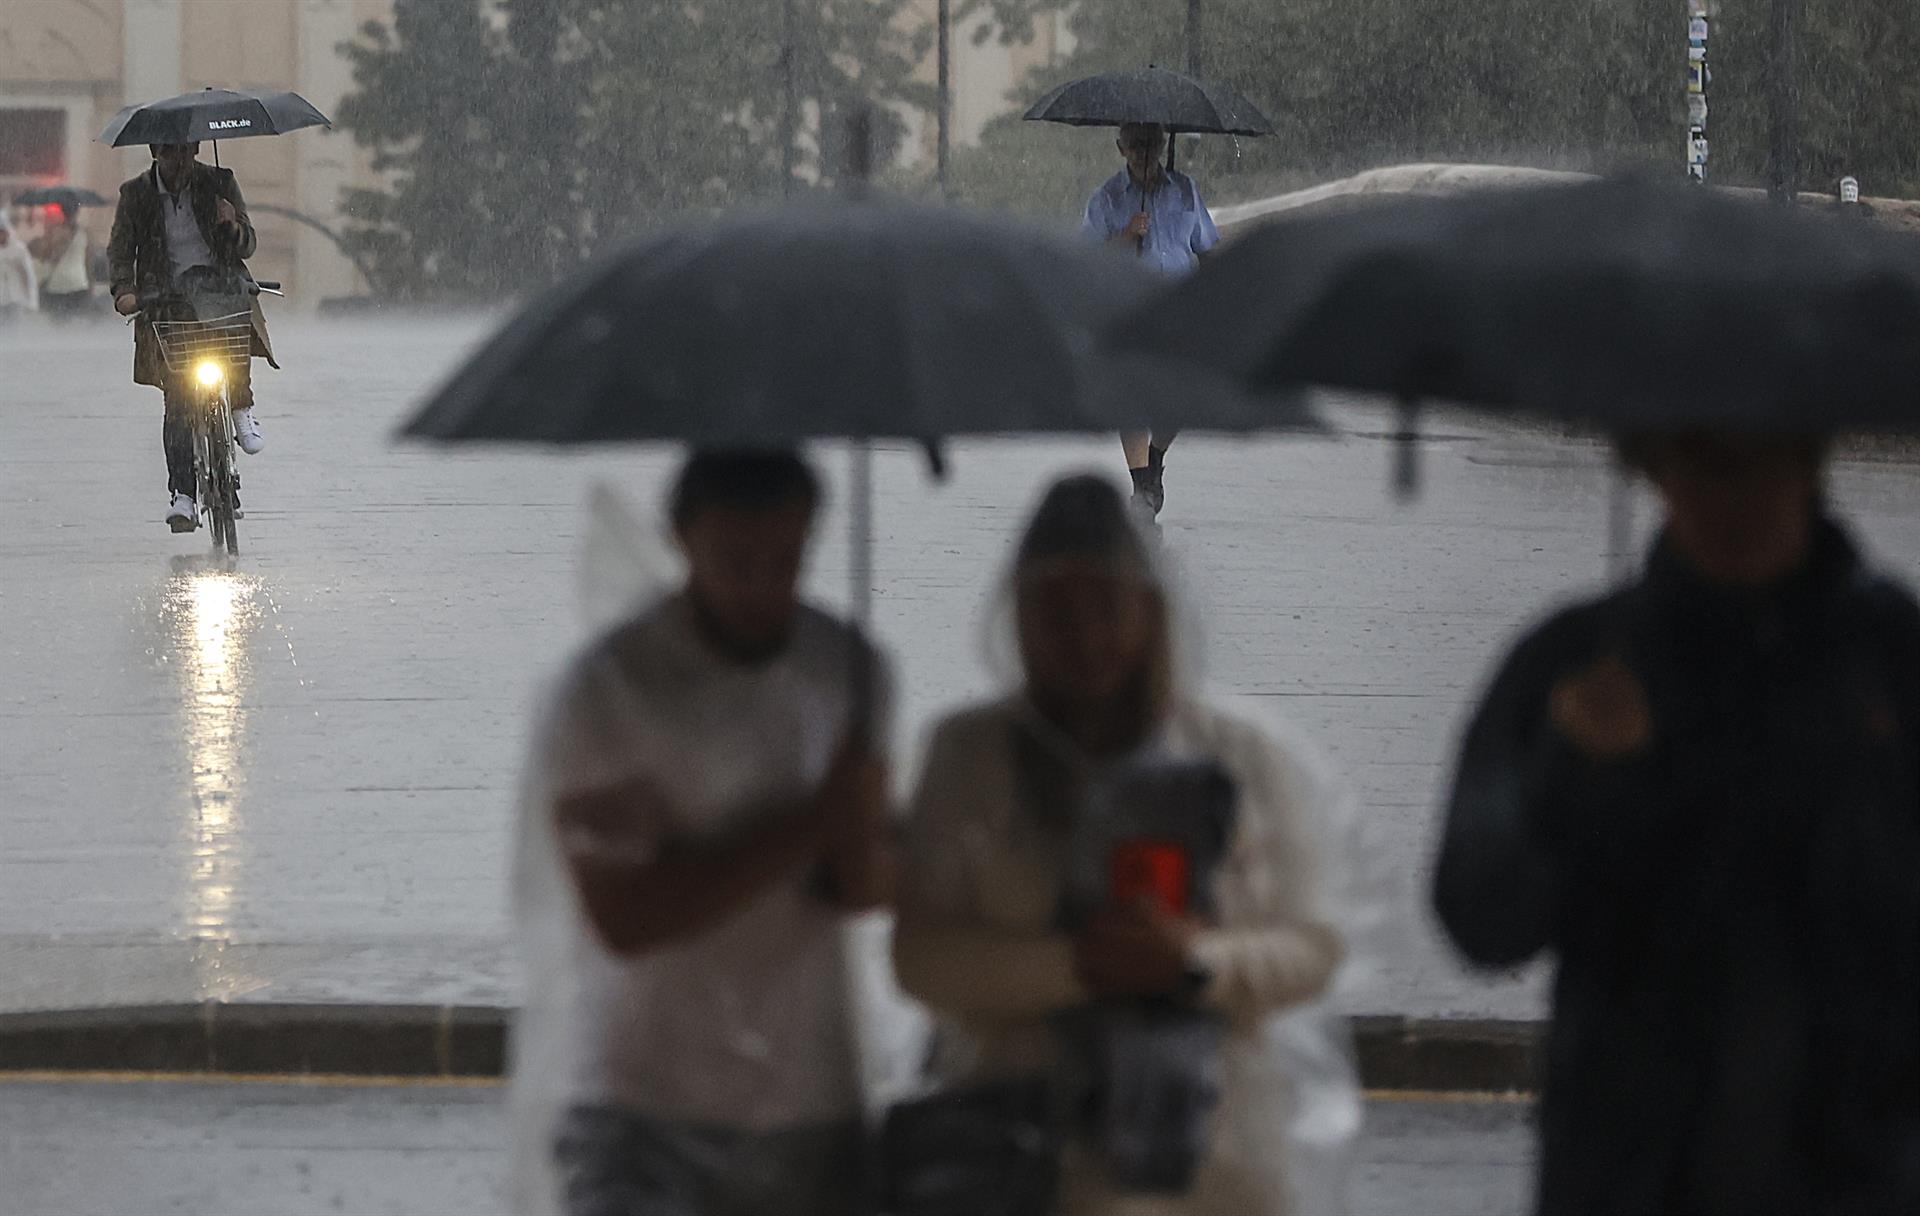 Cataluña y Baleares estarán este domingo en alerta por lluvias potencialmente fuertes durante la madrugada. - Rober Solsona - Europa Press